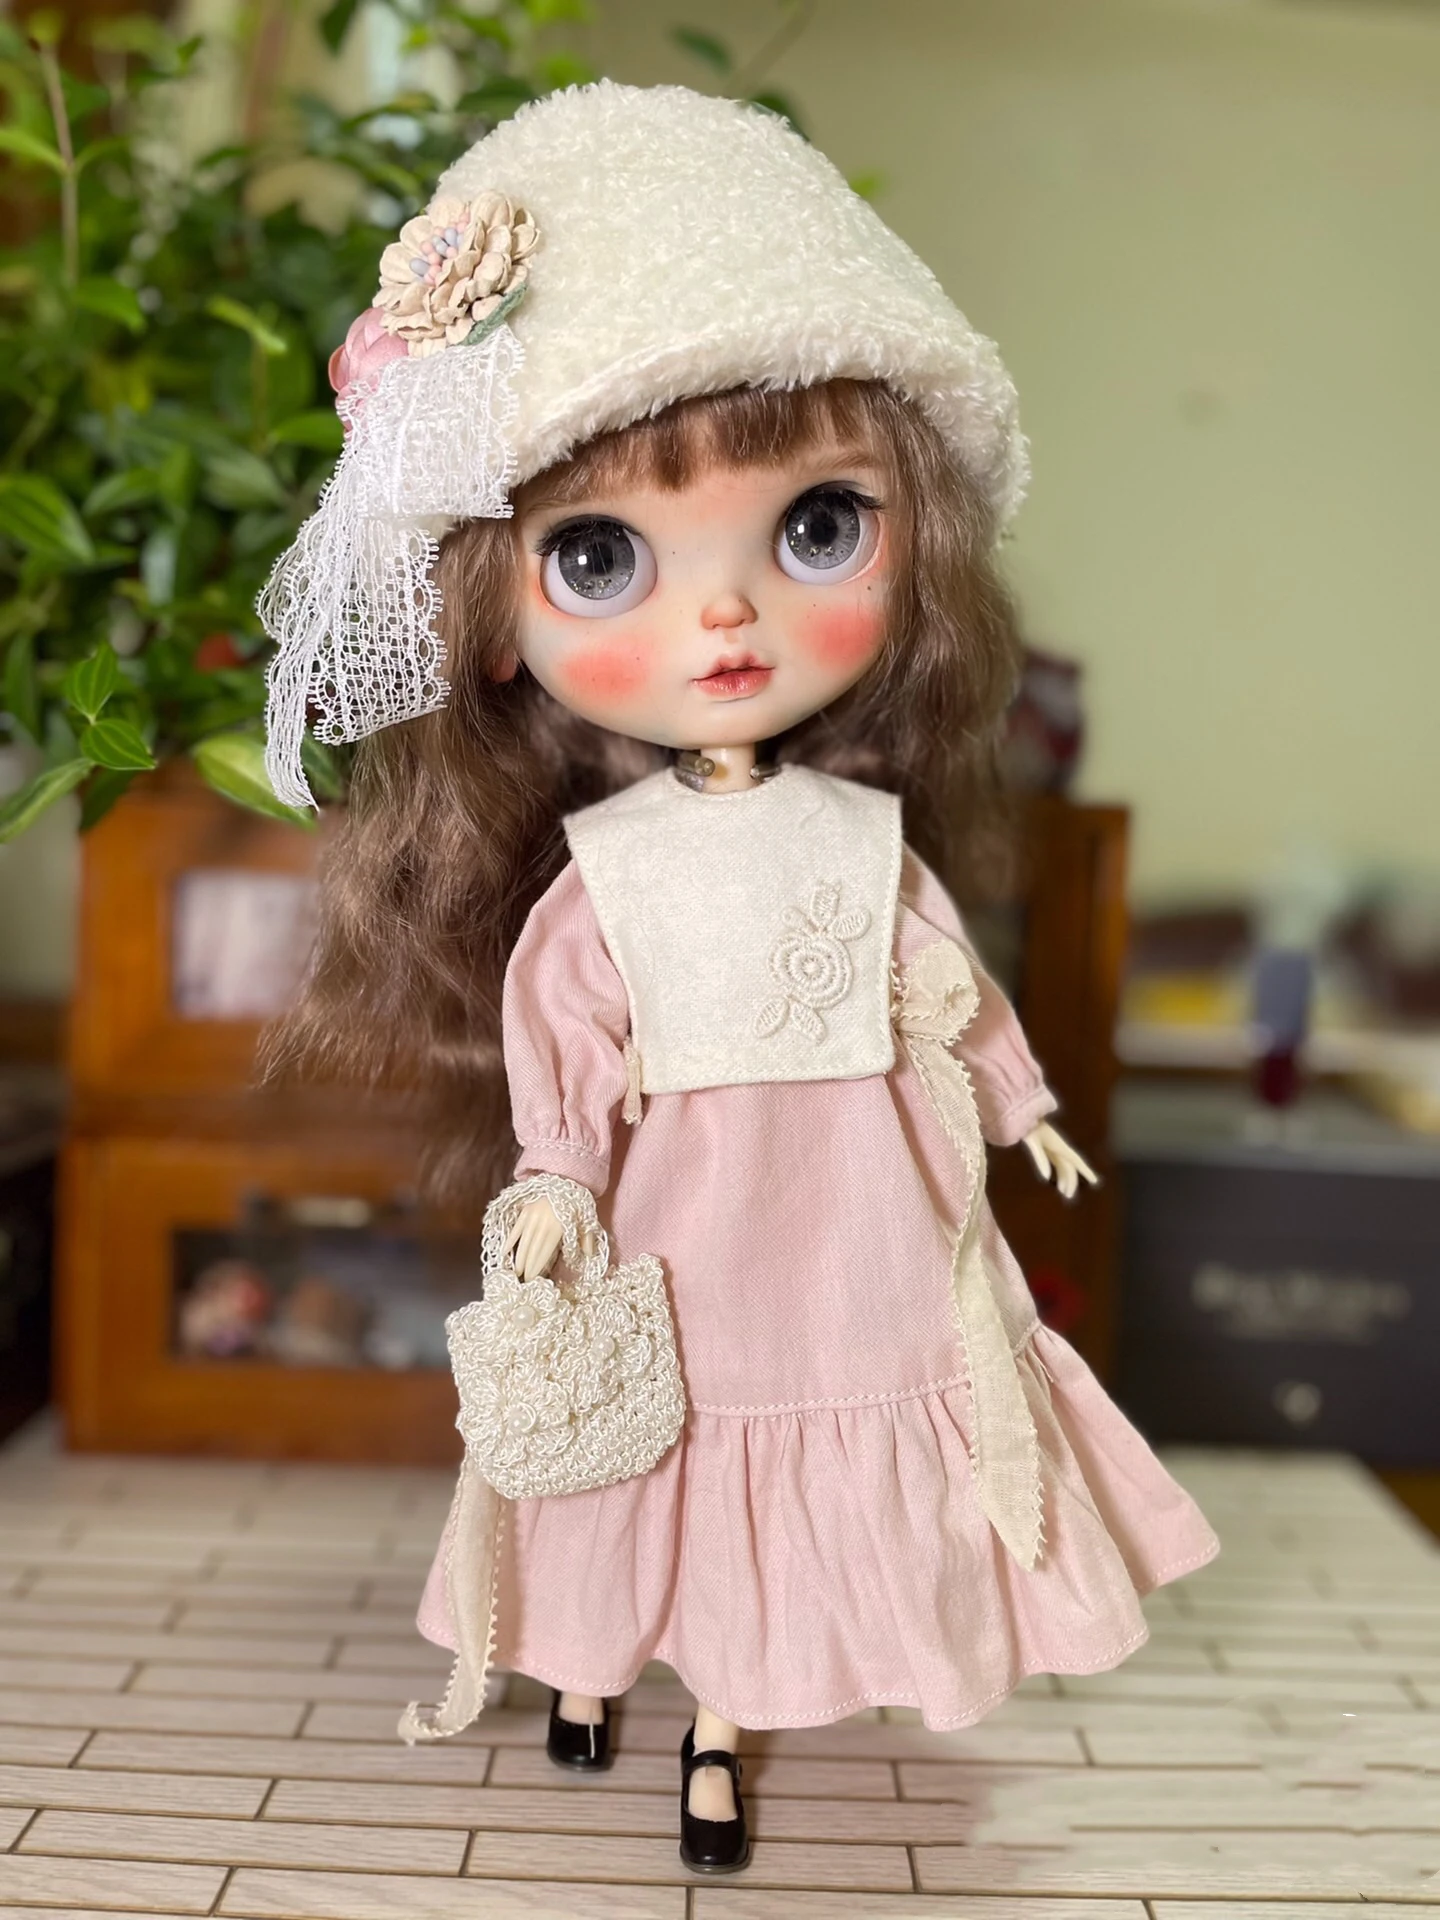 

Одежда Blythe, флисовая шапка, розовая юбка 1/6, 30 см, BJD аниме девушка (подходит для Pullip,Ob24, Licca)